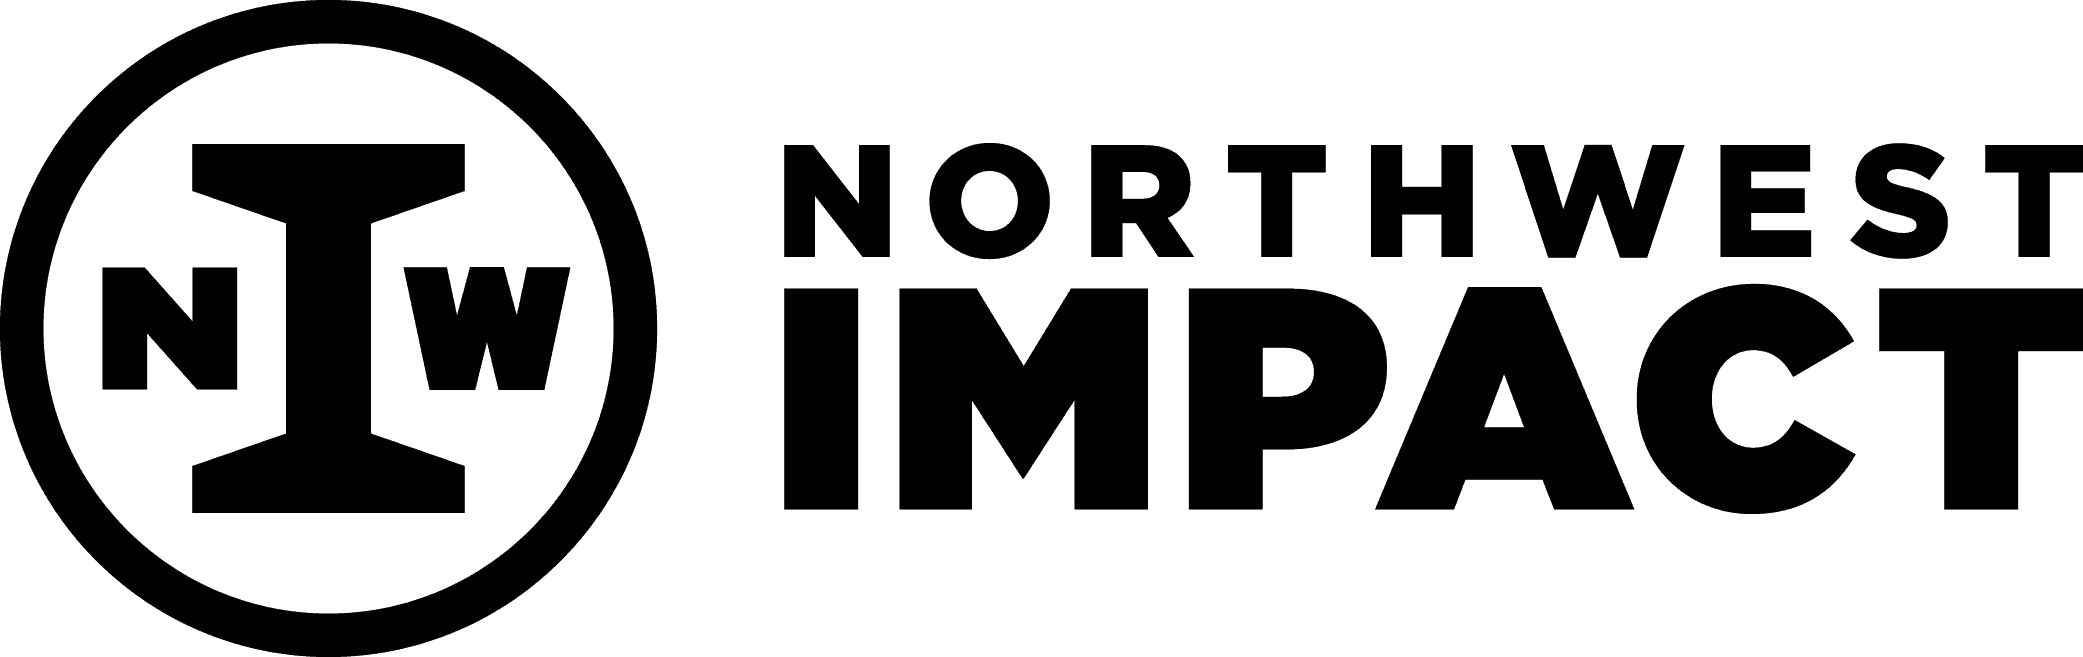 Northwest IMPACT black logo